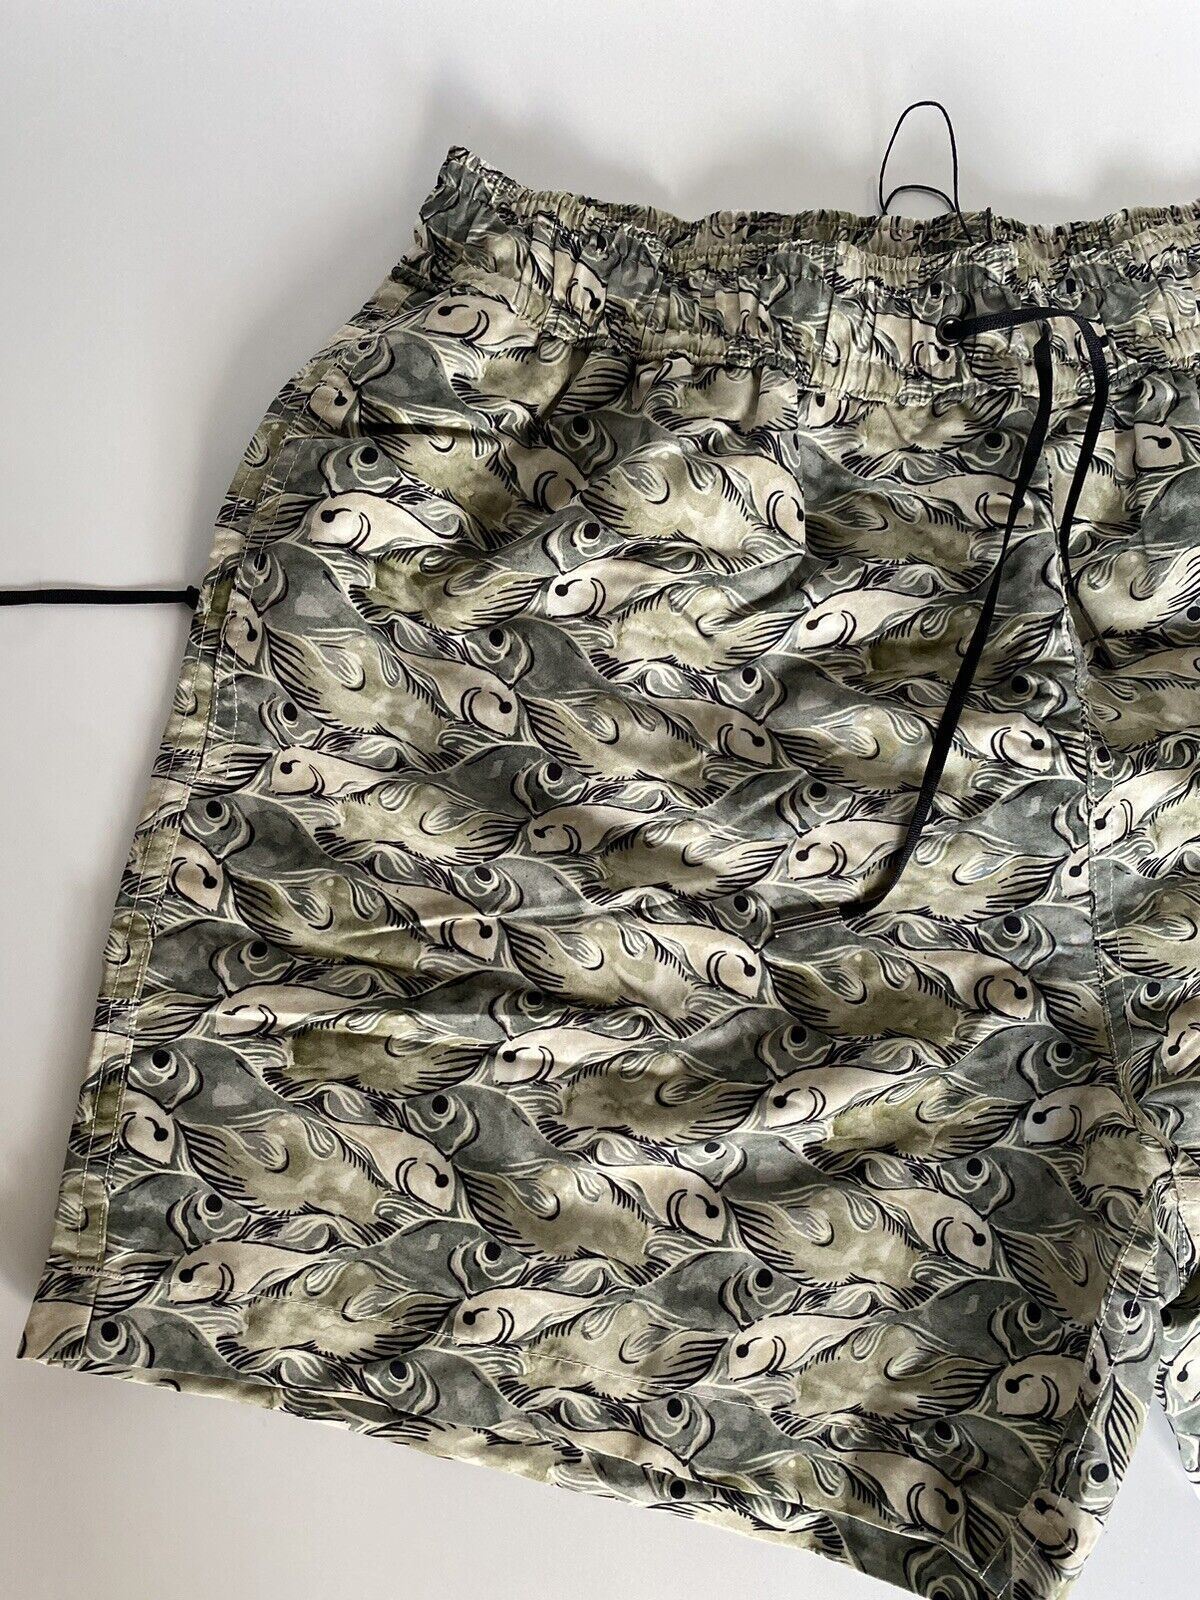 Мужские шорты-боксеры рыбье-зеленого цвета Bottega Veneta, размер 2XL, 560949, NWT, 550 долларов США. 